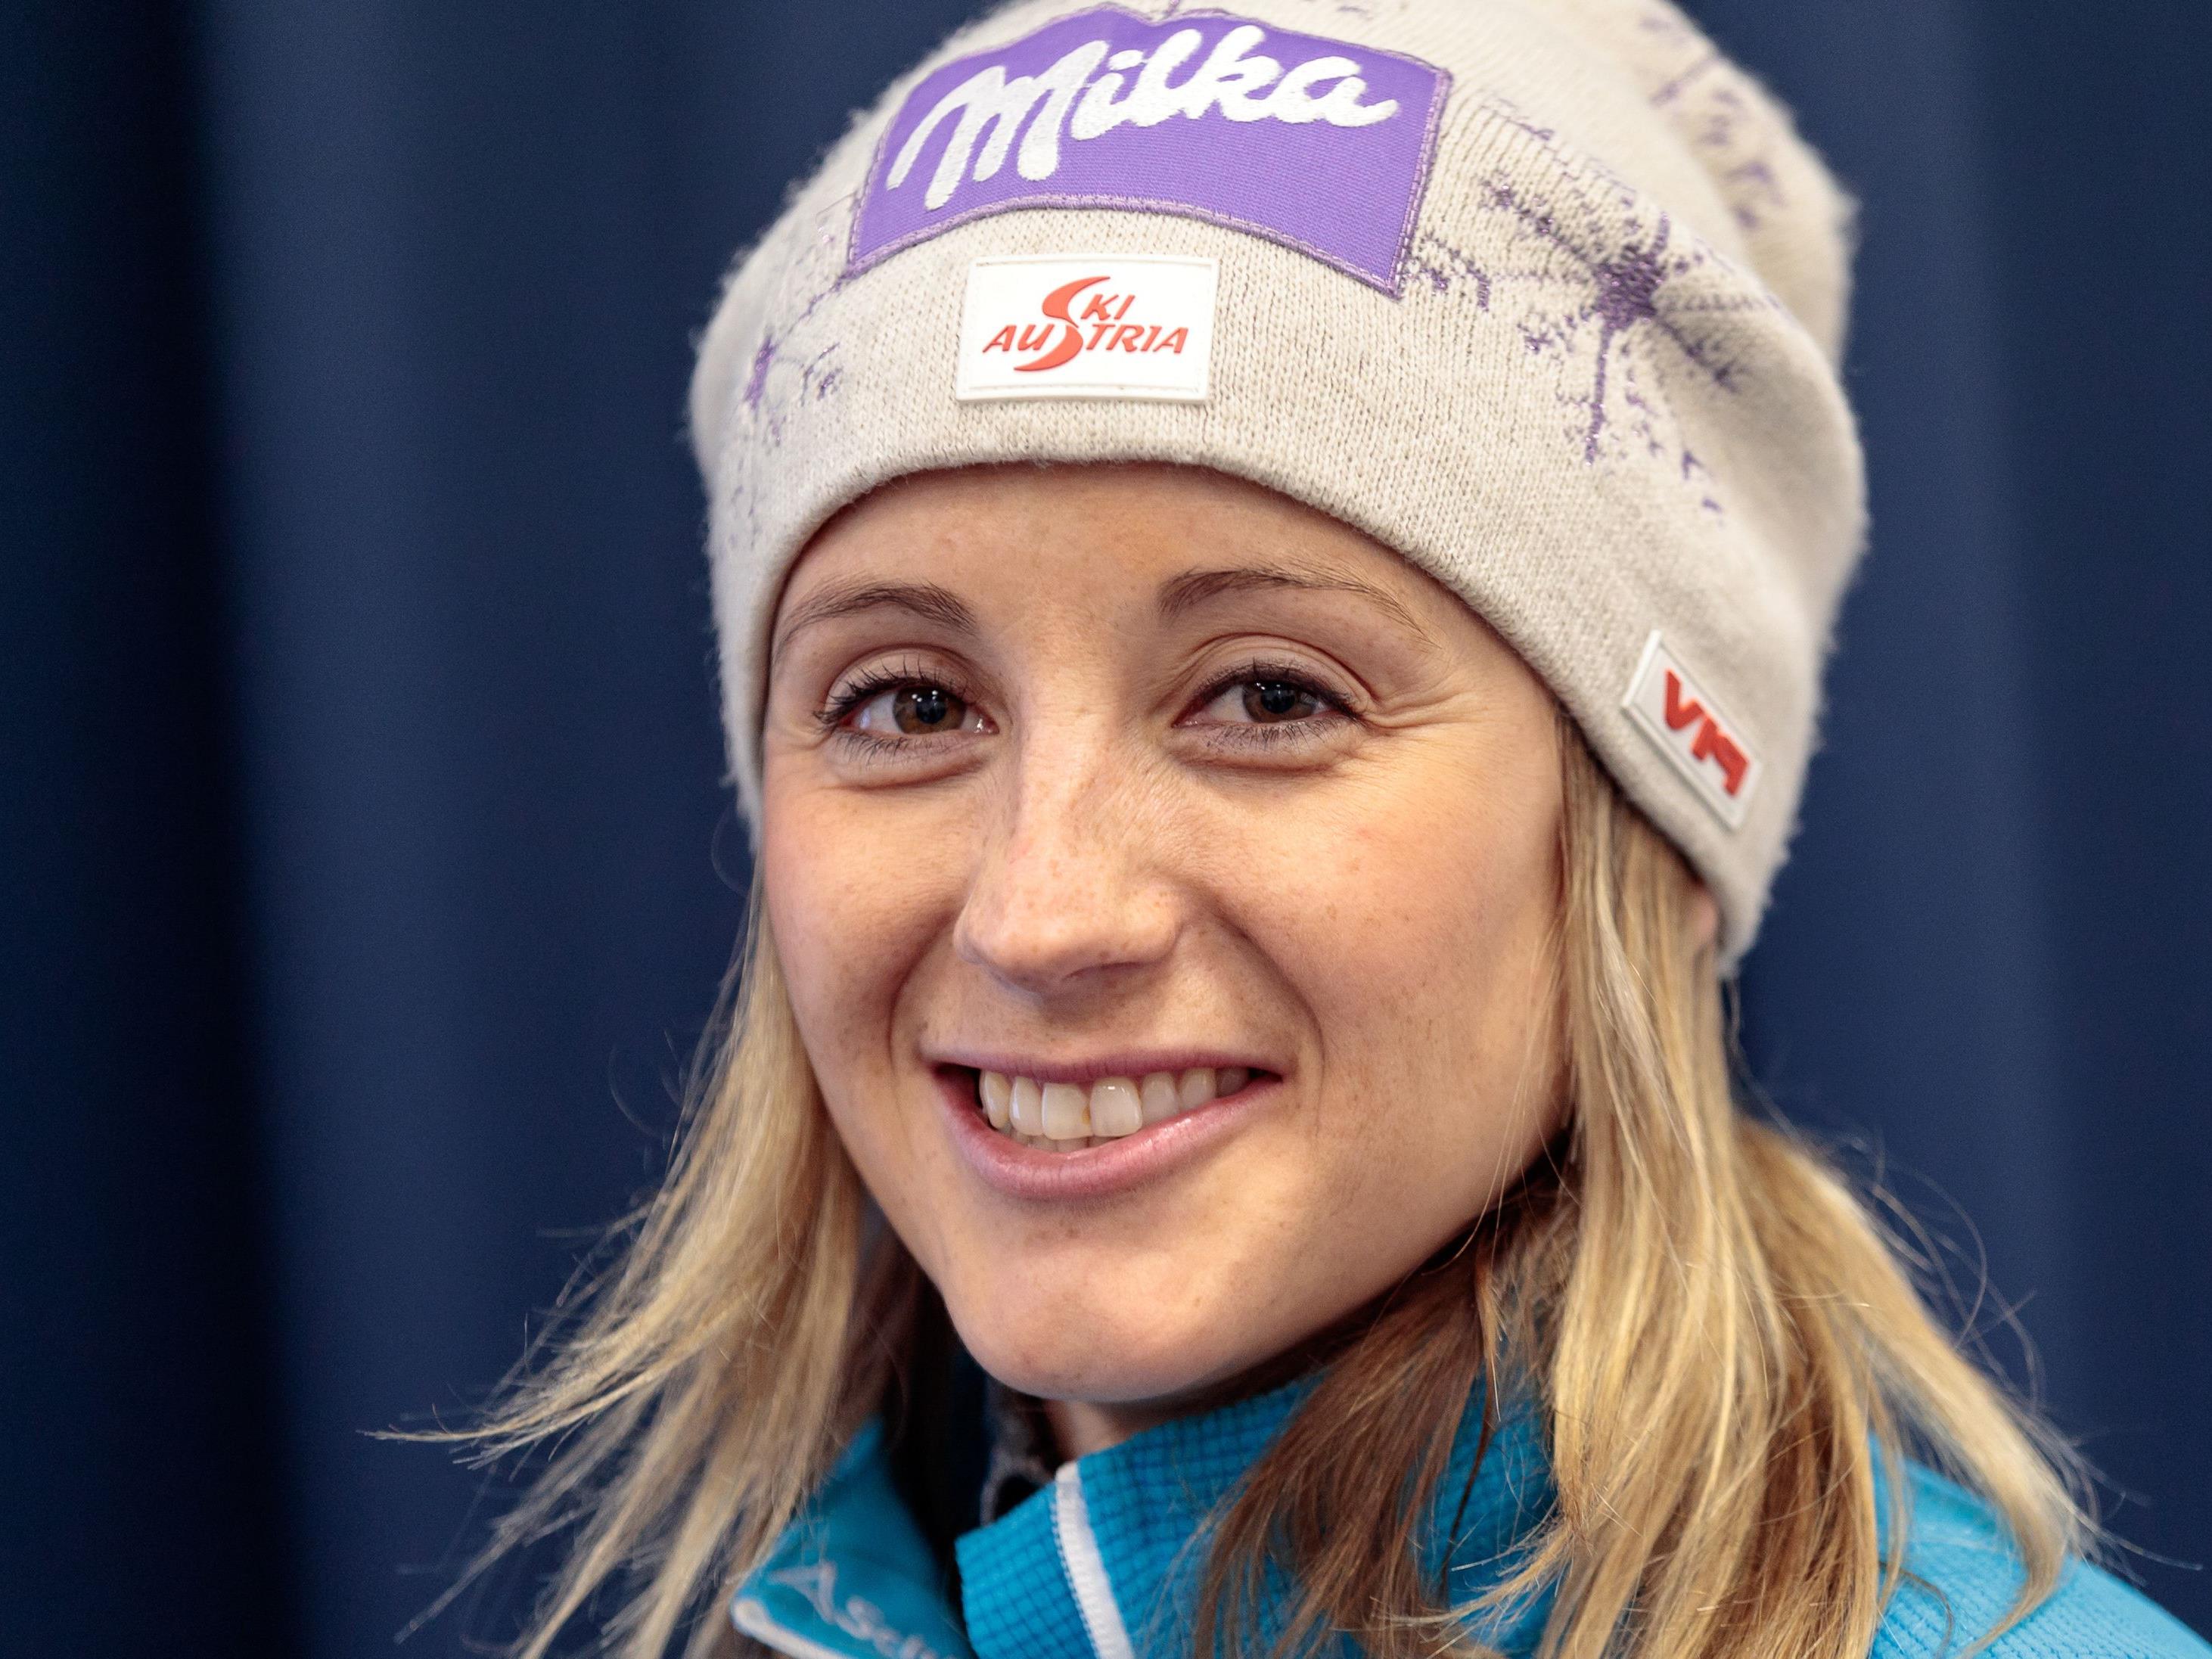 Michaela Kirchgasser ist eine der erfolgreichsten ÖSV-Skirennläuferinnen.